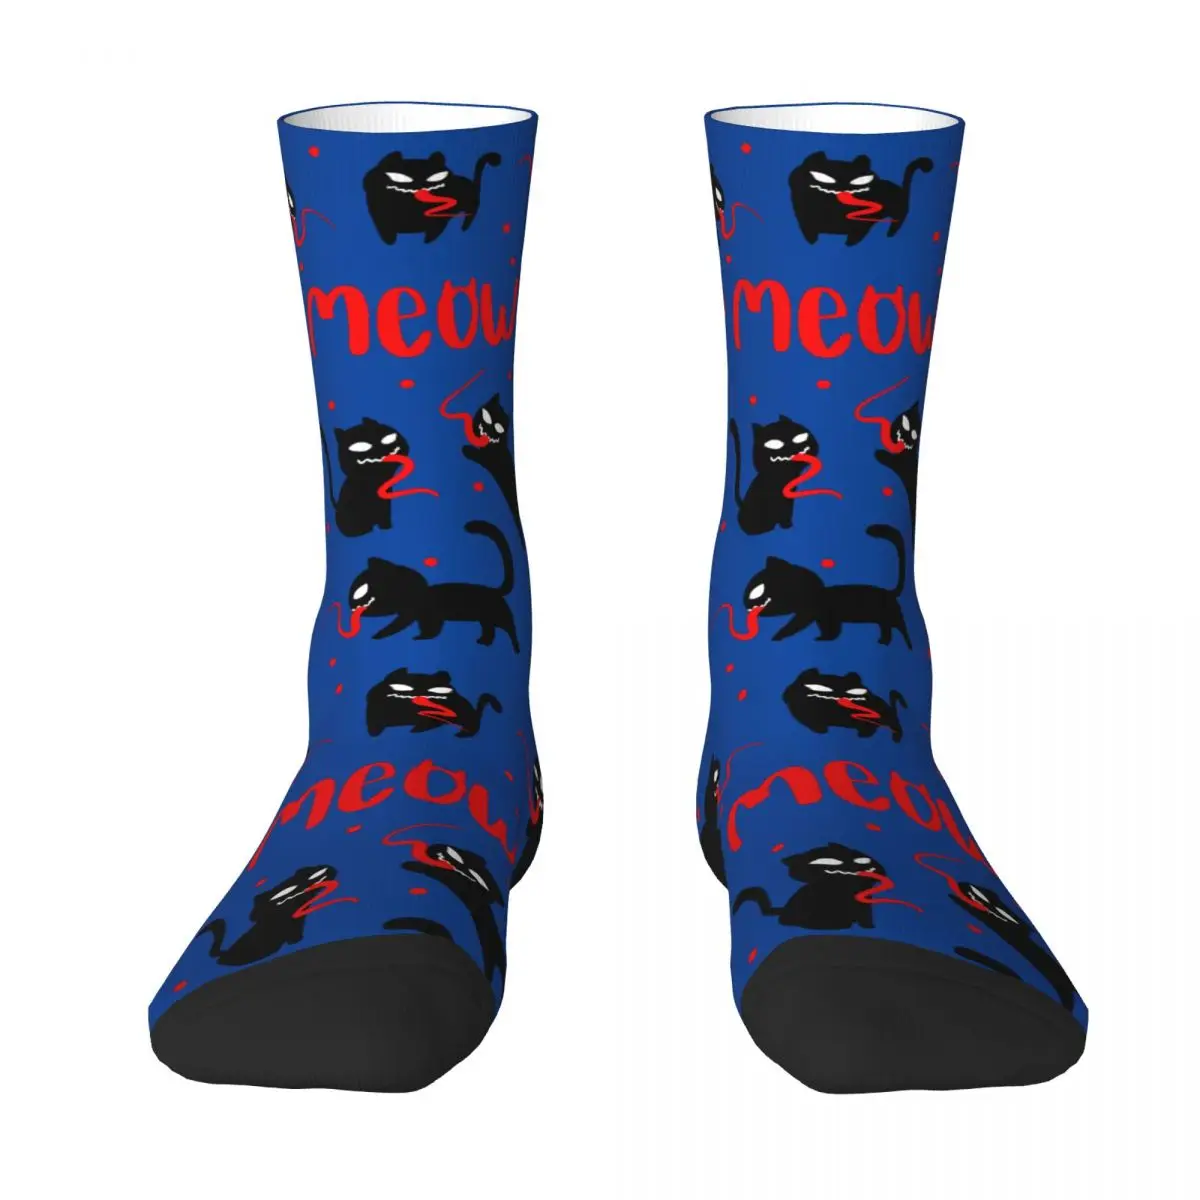 Venom Adult Socks venom,horrifying,dark Unisex socks,men Socks women Socks